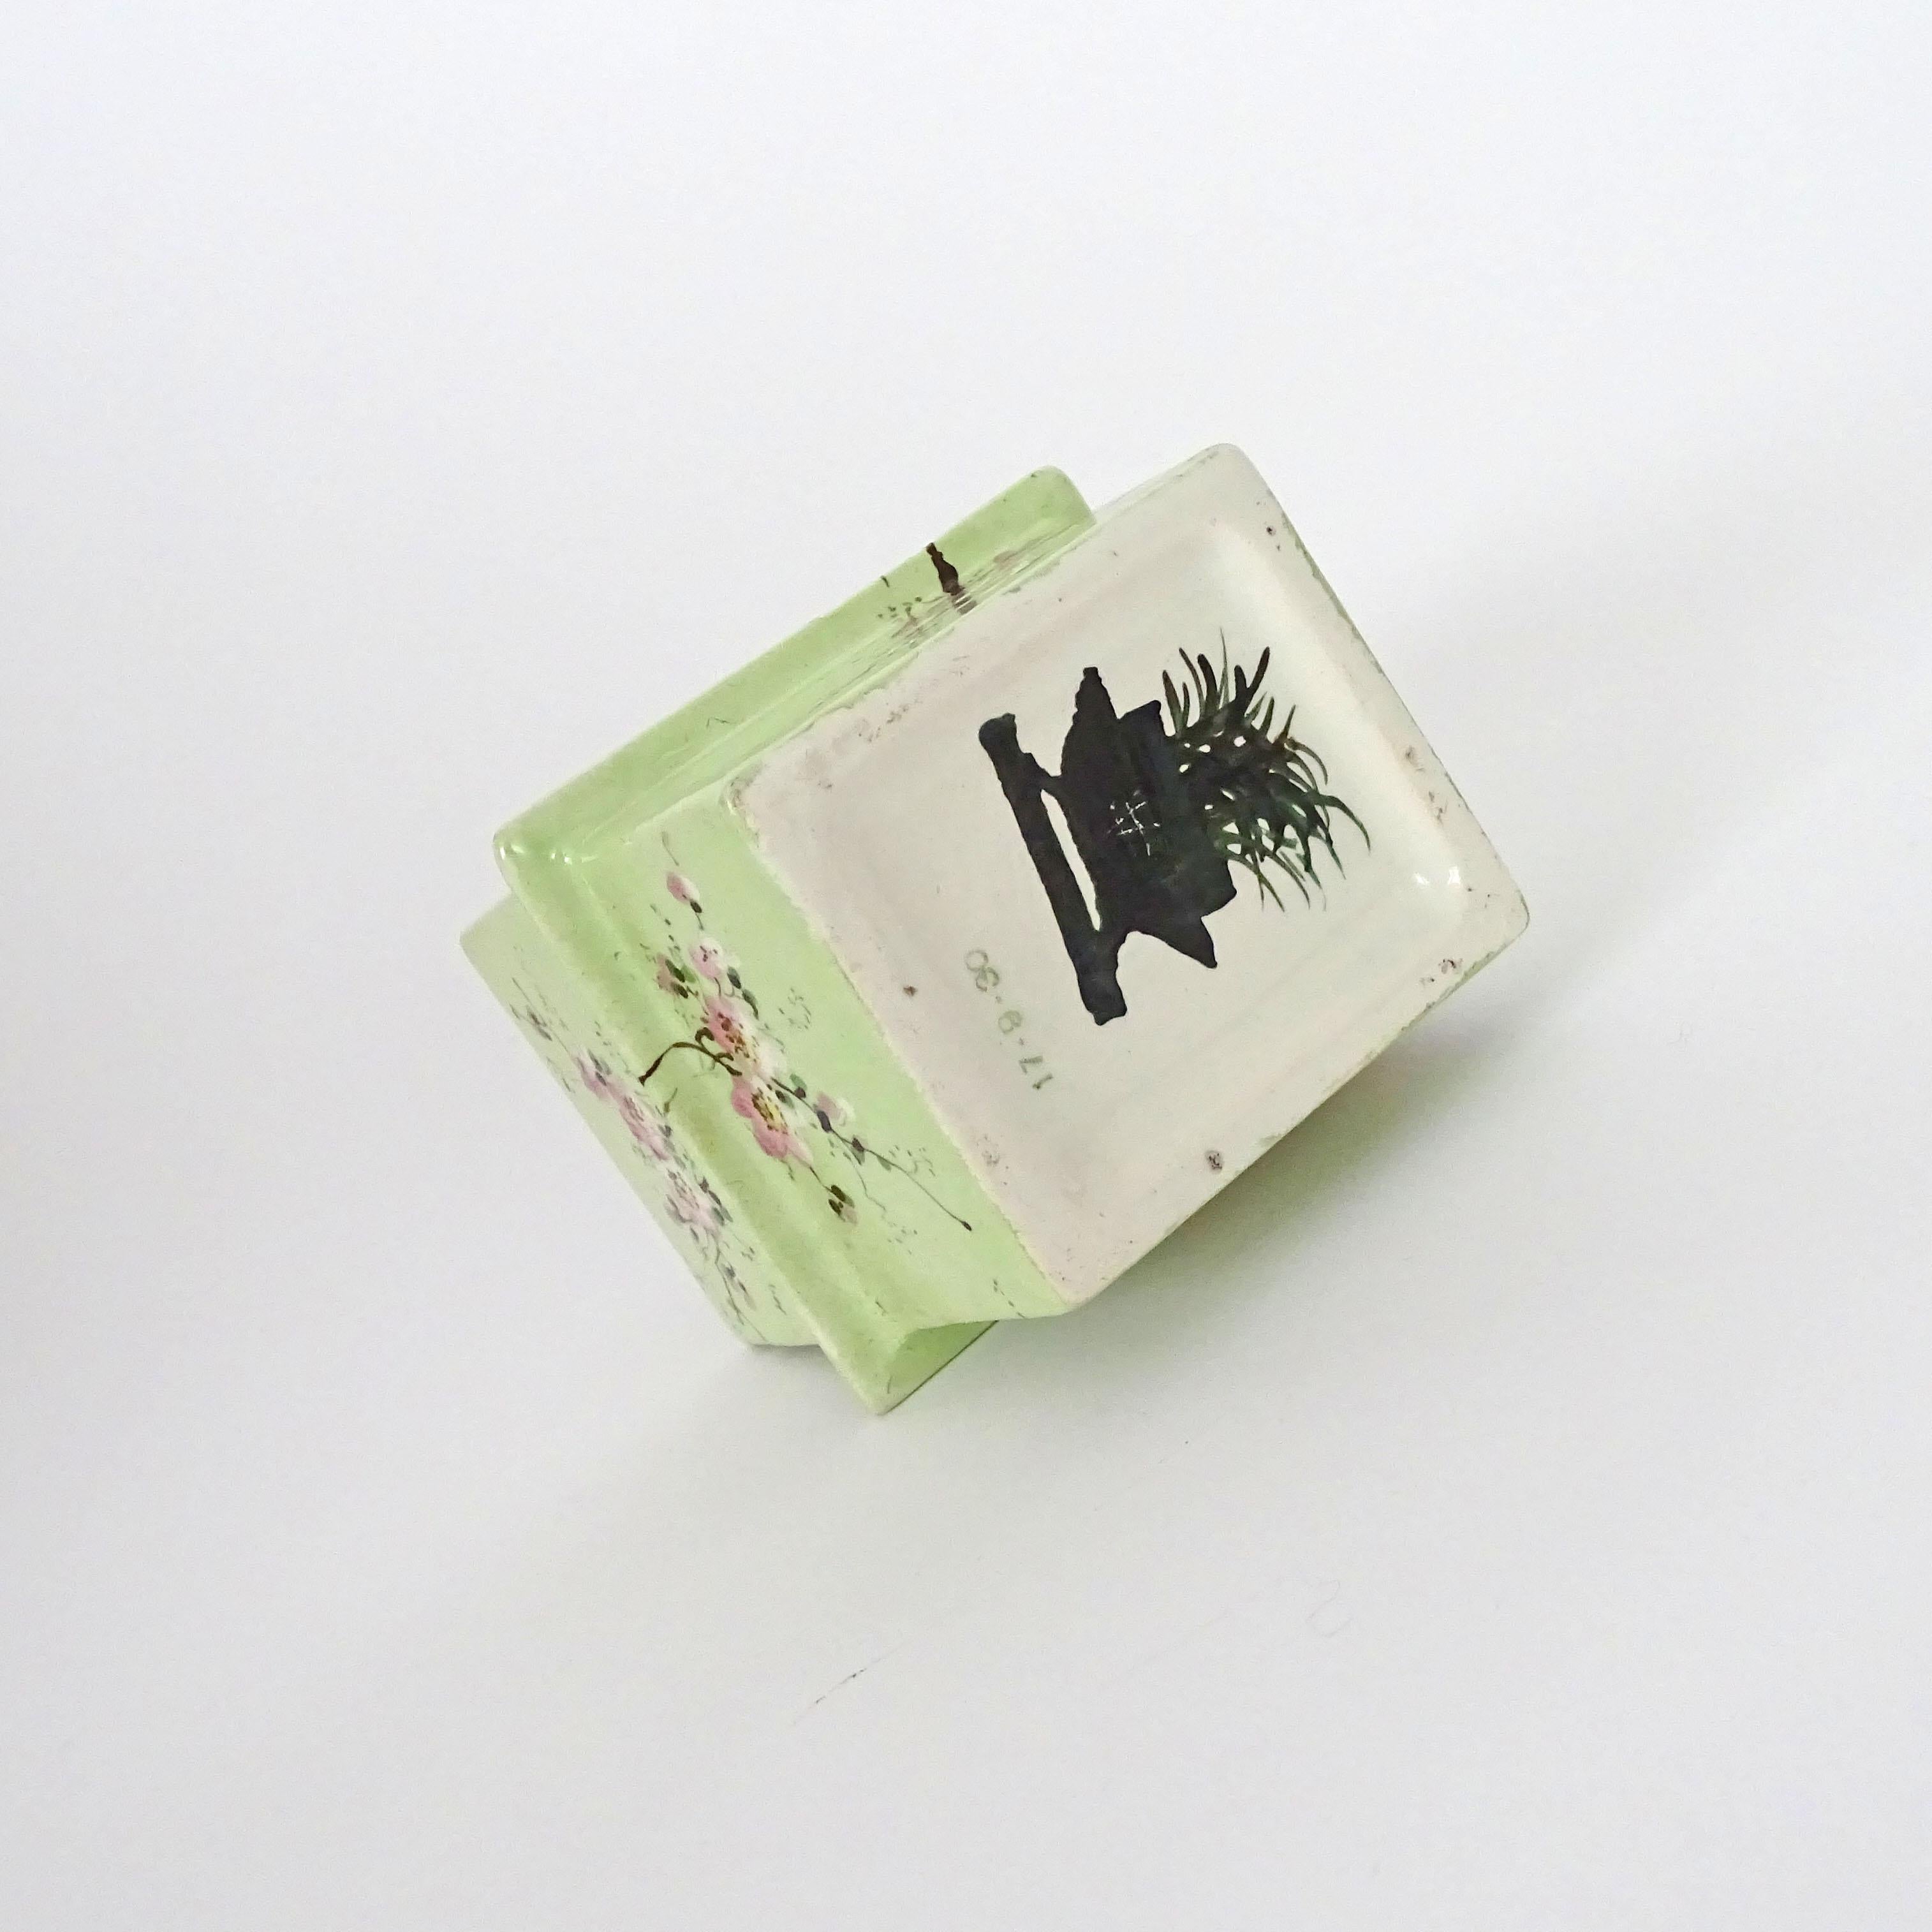 Mid-20th Century Gio Ponti Ceramic Cigarette Box for Richard Ginori, Italy 1930s For Sale